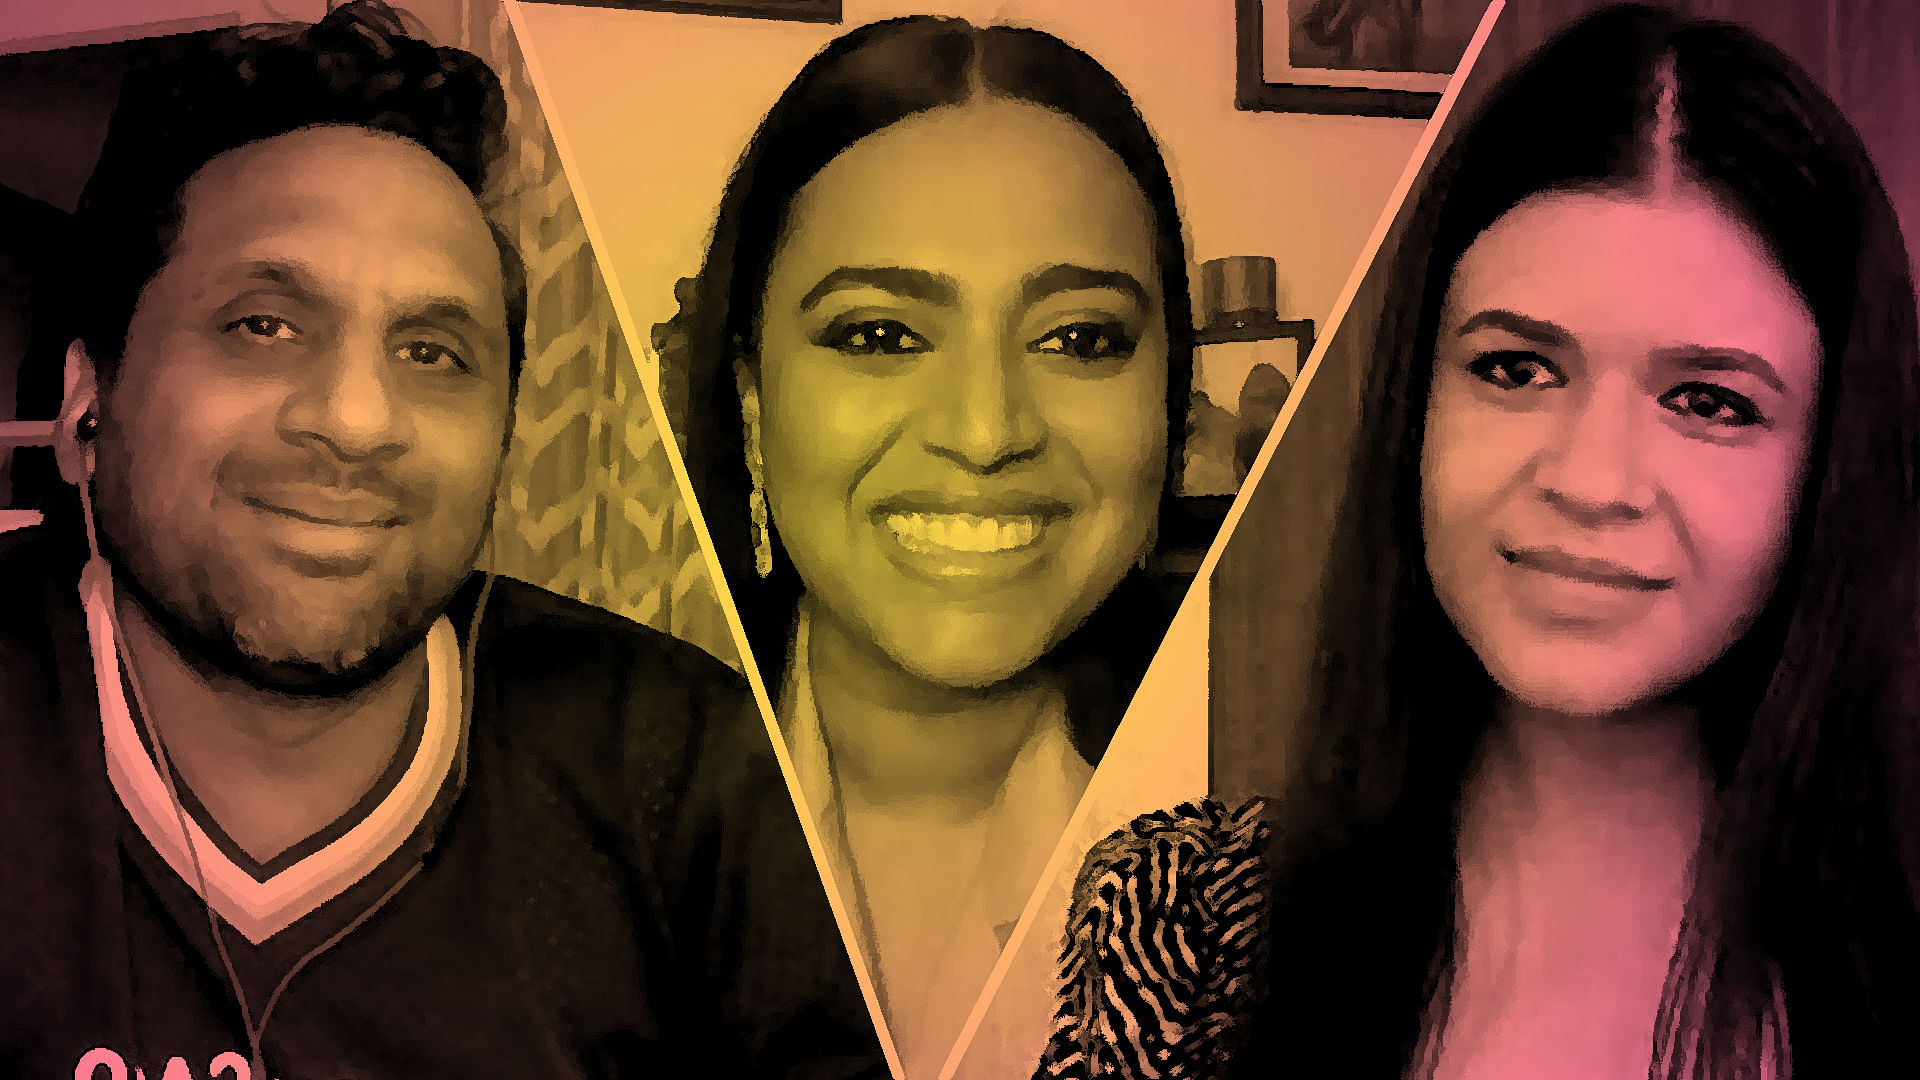 Swara Bhasker and Ravi Patel speak about Bhaag Beanie Bhaag.